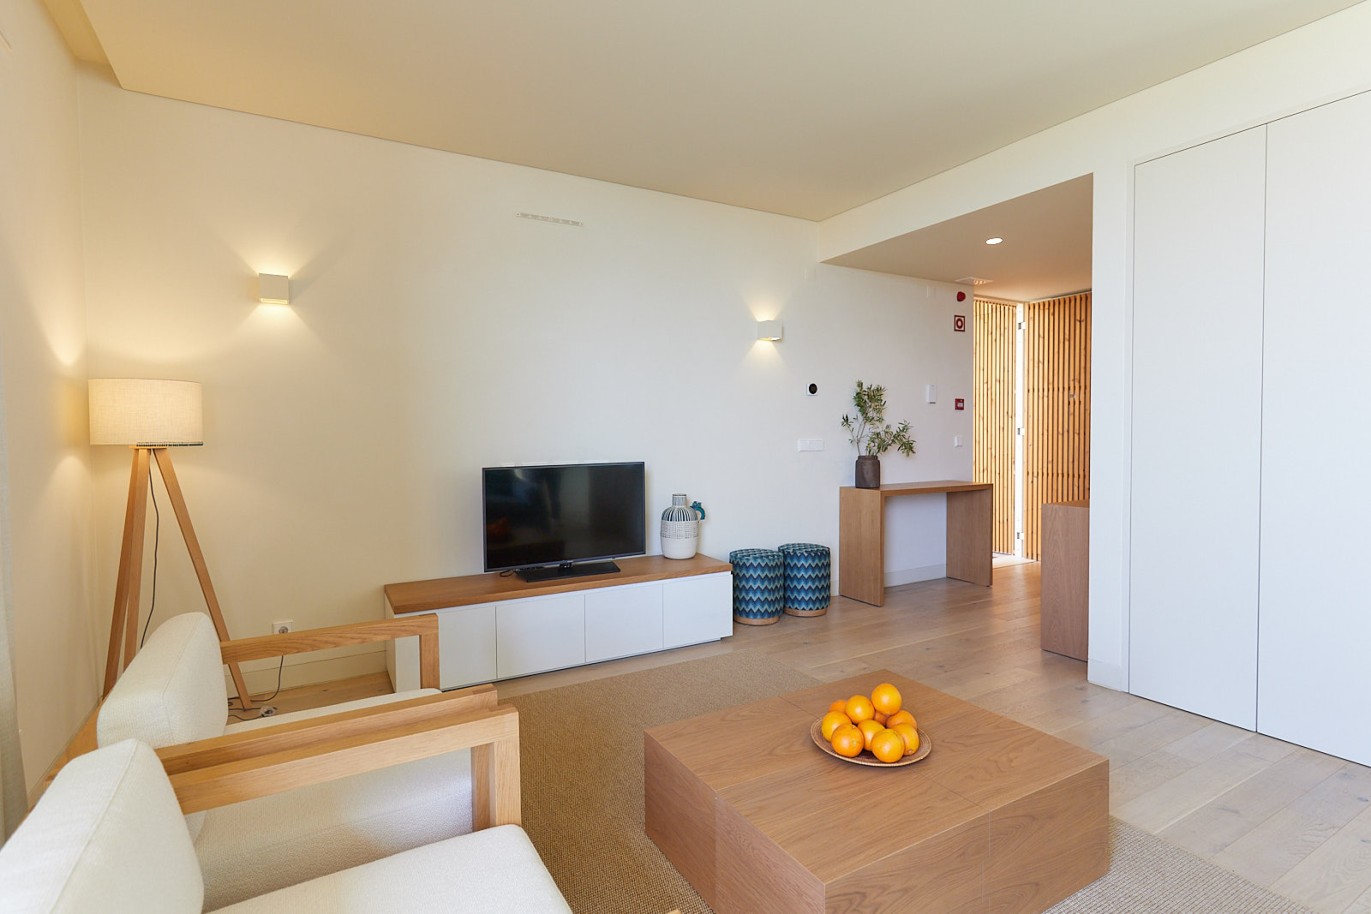 3 bedroom flat in resort, for sale in Porches, Algarve_230741